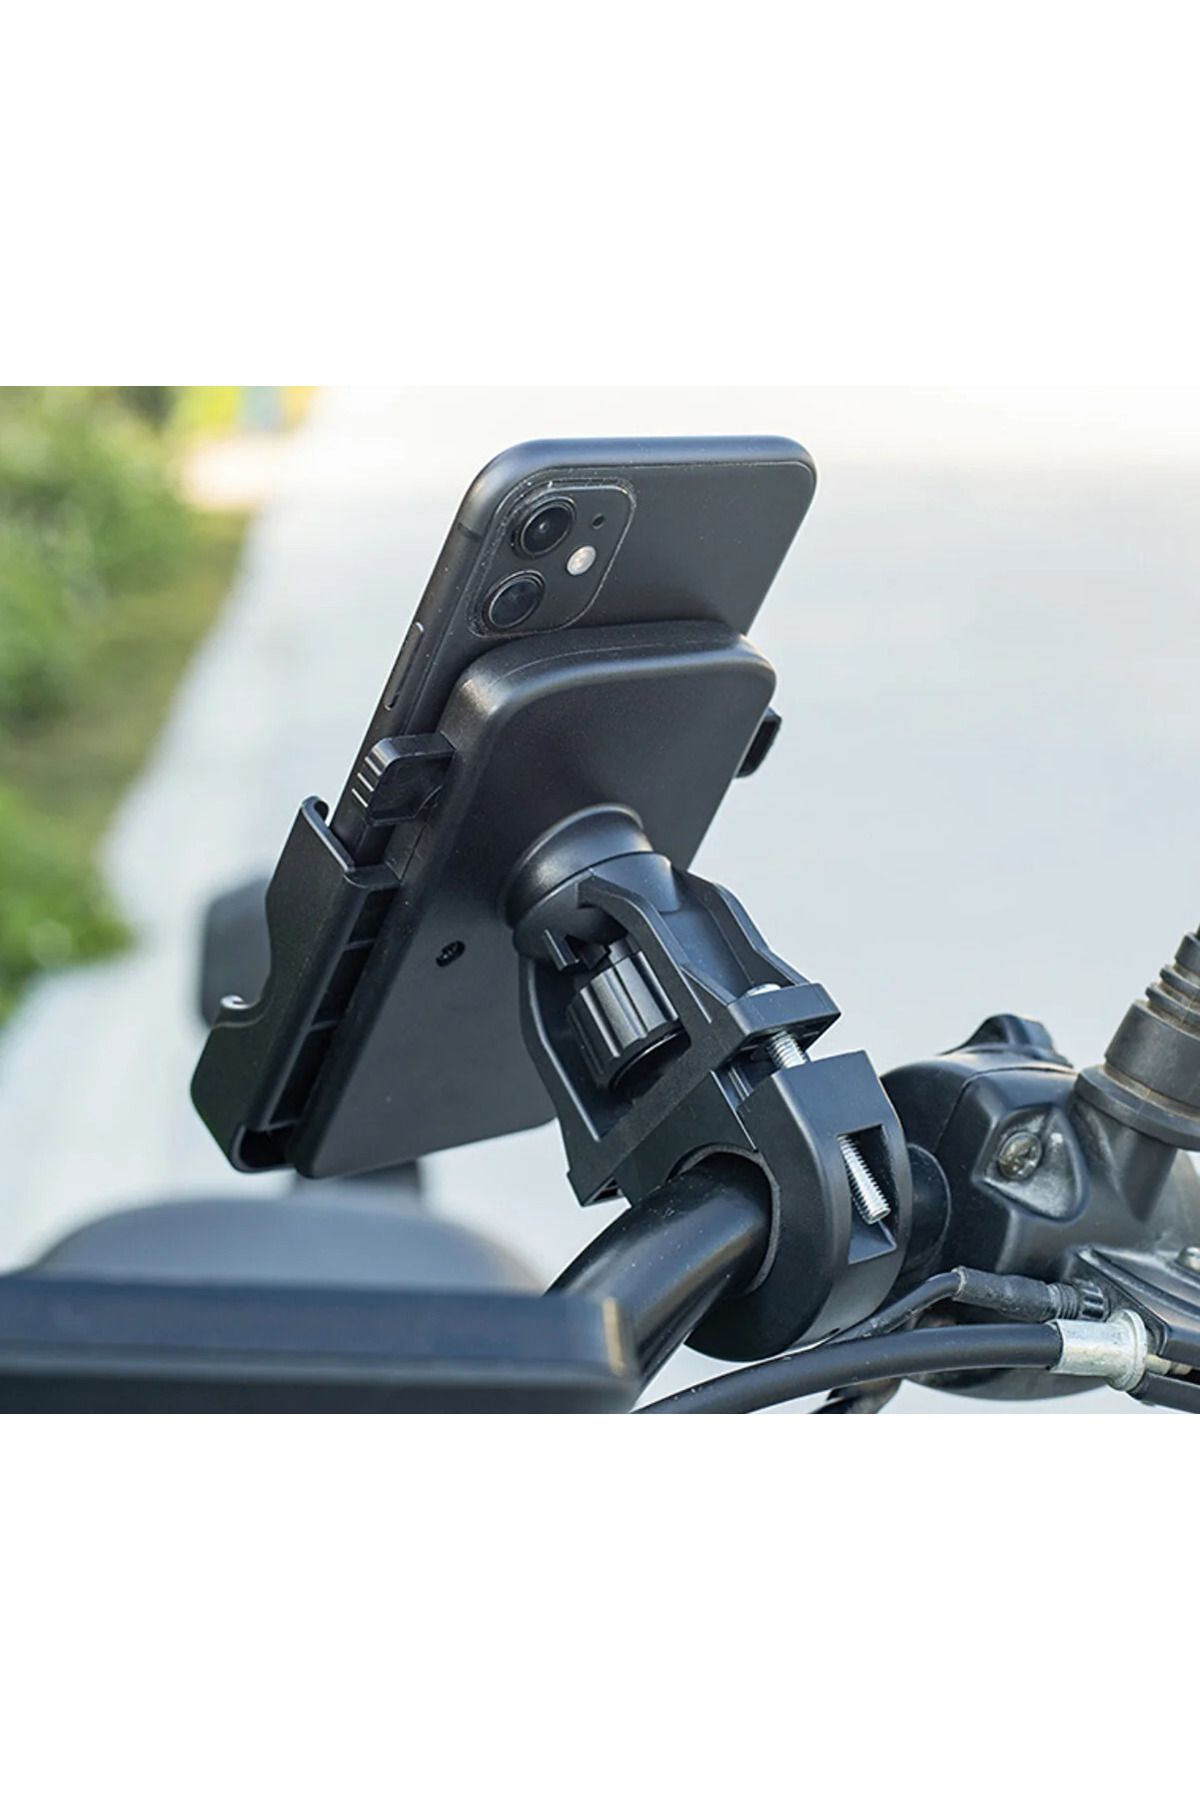 MATECHNO Bisiklet Motorsiklet Scooter ATV Otomatik Tuşlu Motosiklet Gidon Bağlantılı Telefon Tutucu Tutacağı